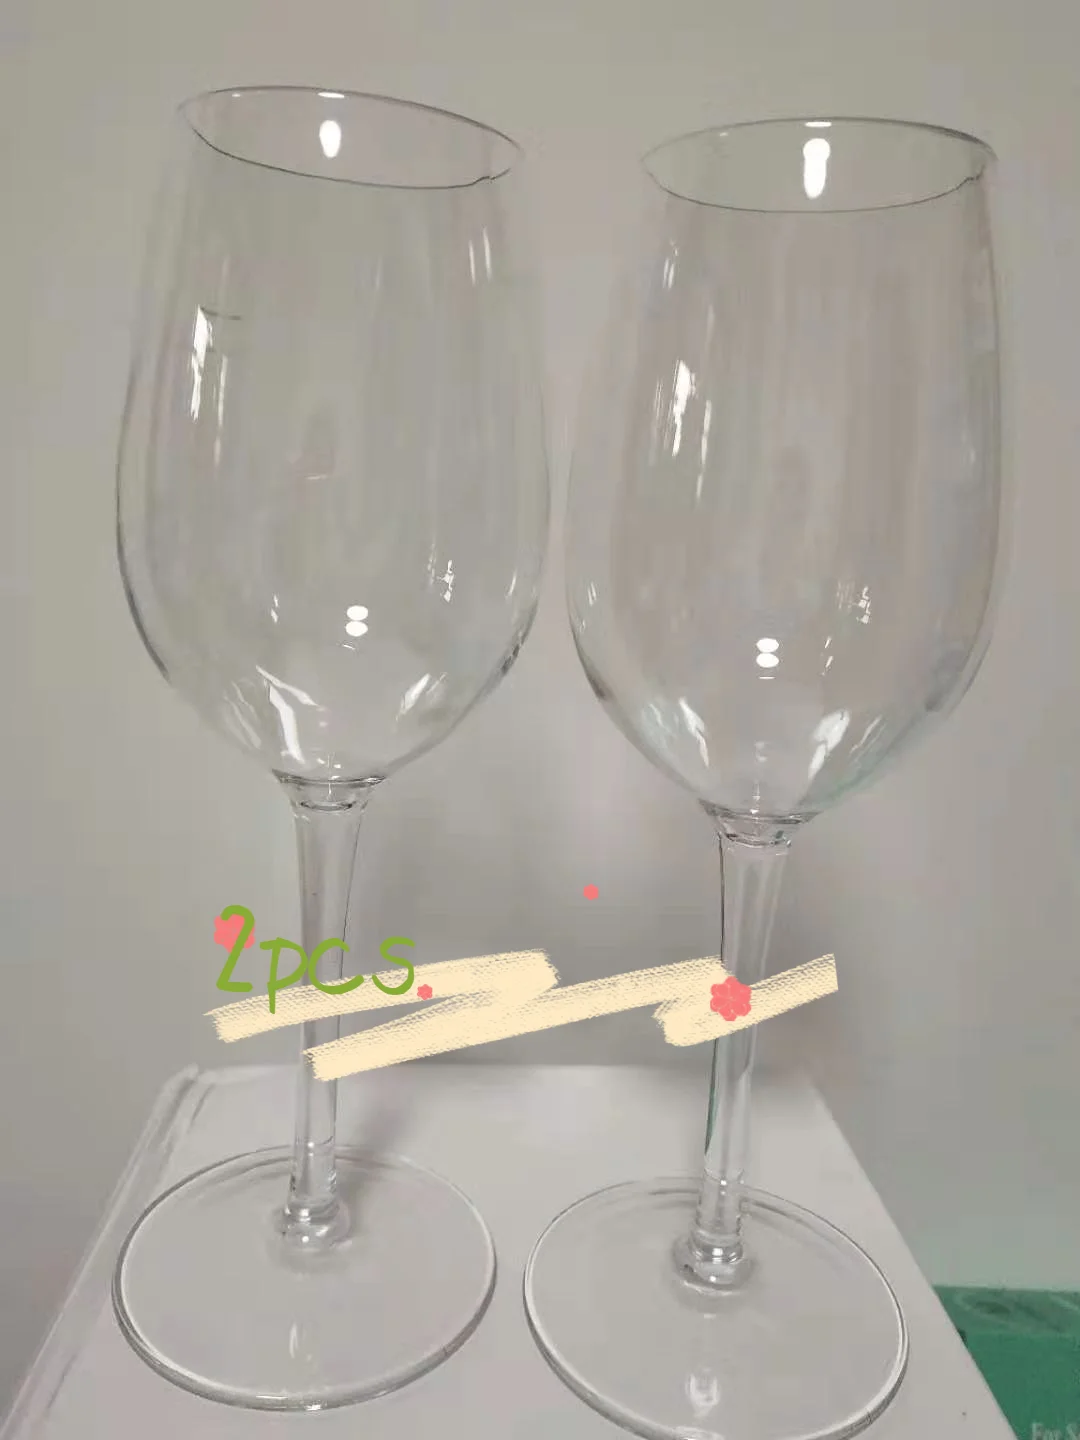 Fondo cuadrado acampar Mejor que las gafas de policarbonato, bodas Vasos de vino de plástico Set de 4 vasos de vino blanco rojo sin romper Irrompible reutilizables 16 oz 450 ml Vasos para fiestas